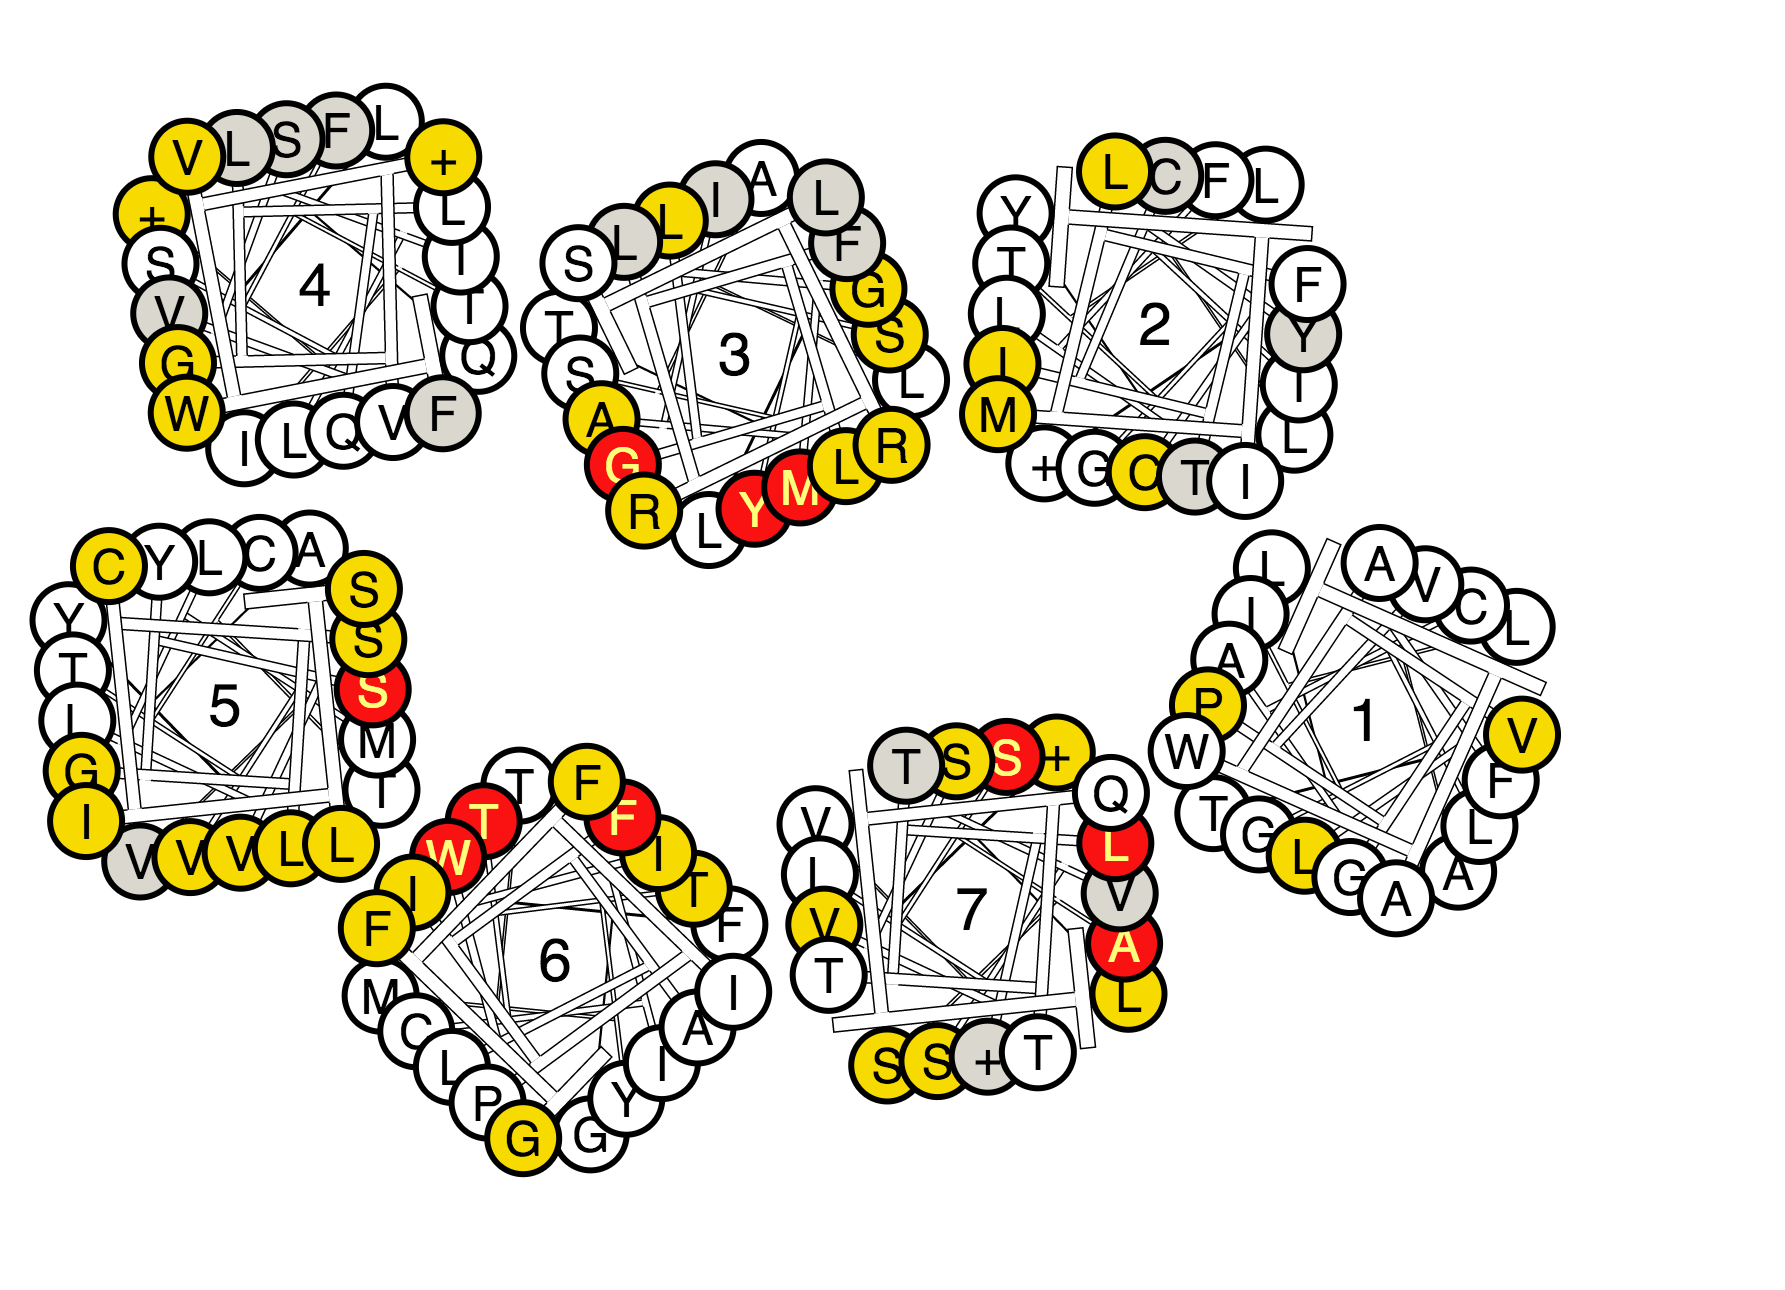 Example helix box diagram